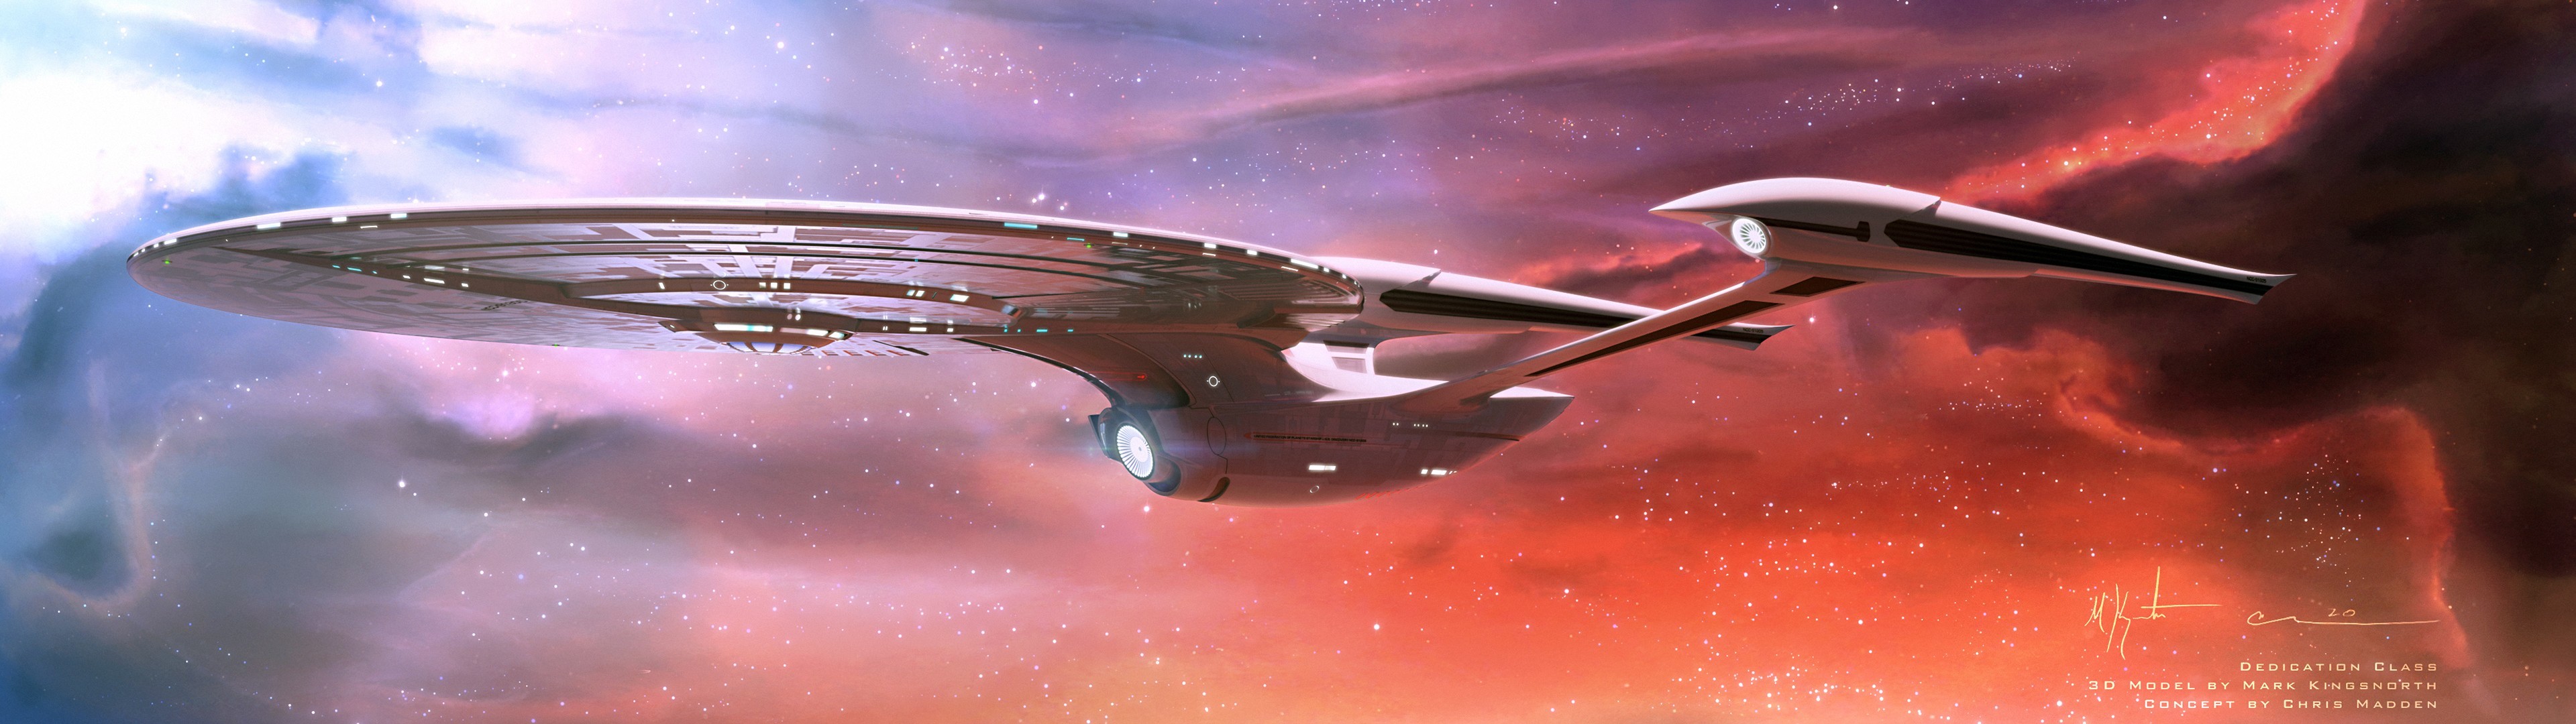 General Star Trek USS Enterprise spaceship space nebula multiple display dual monitors